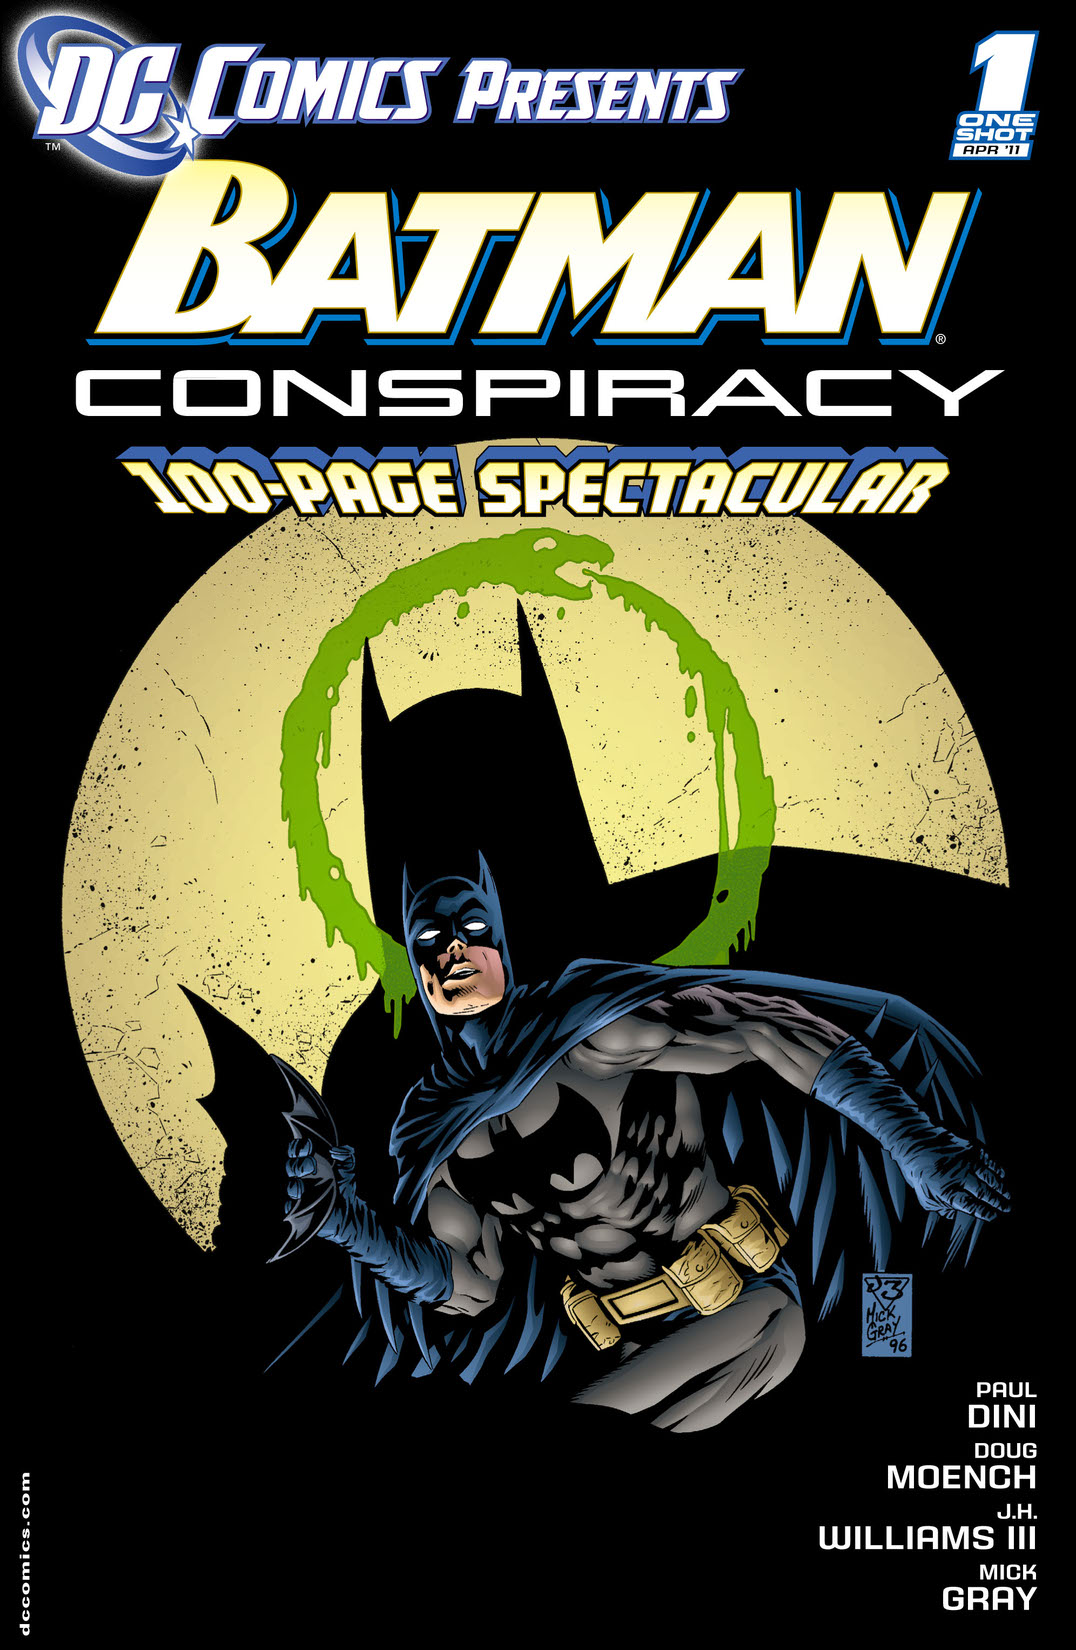 DC Comics Presents: Batman Conspiracy (2011-) #1 preview images